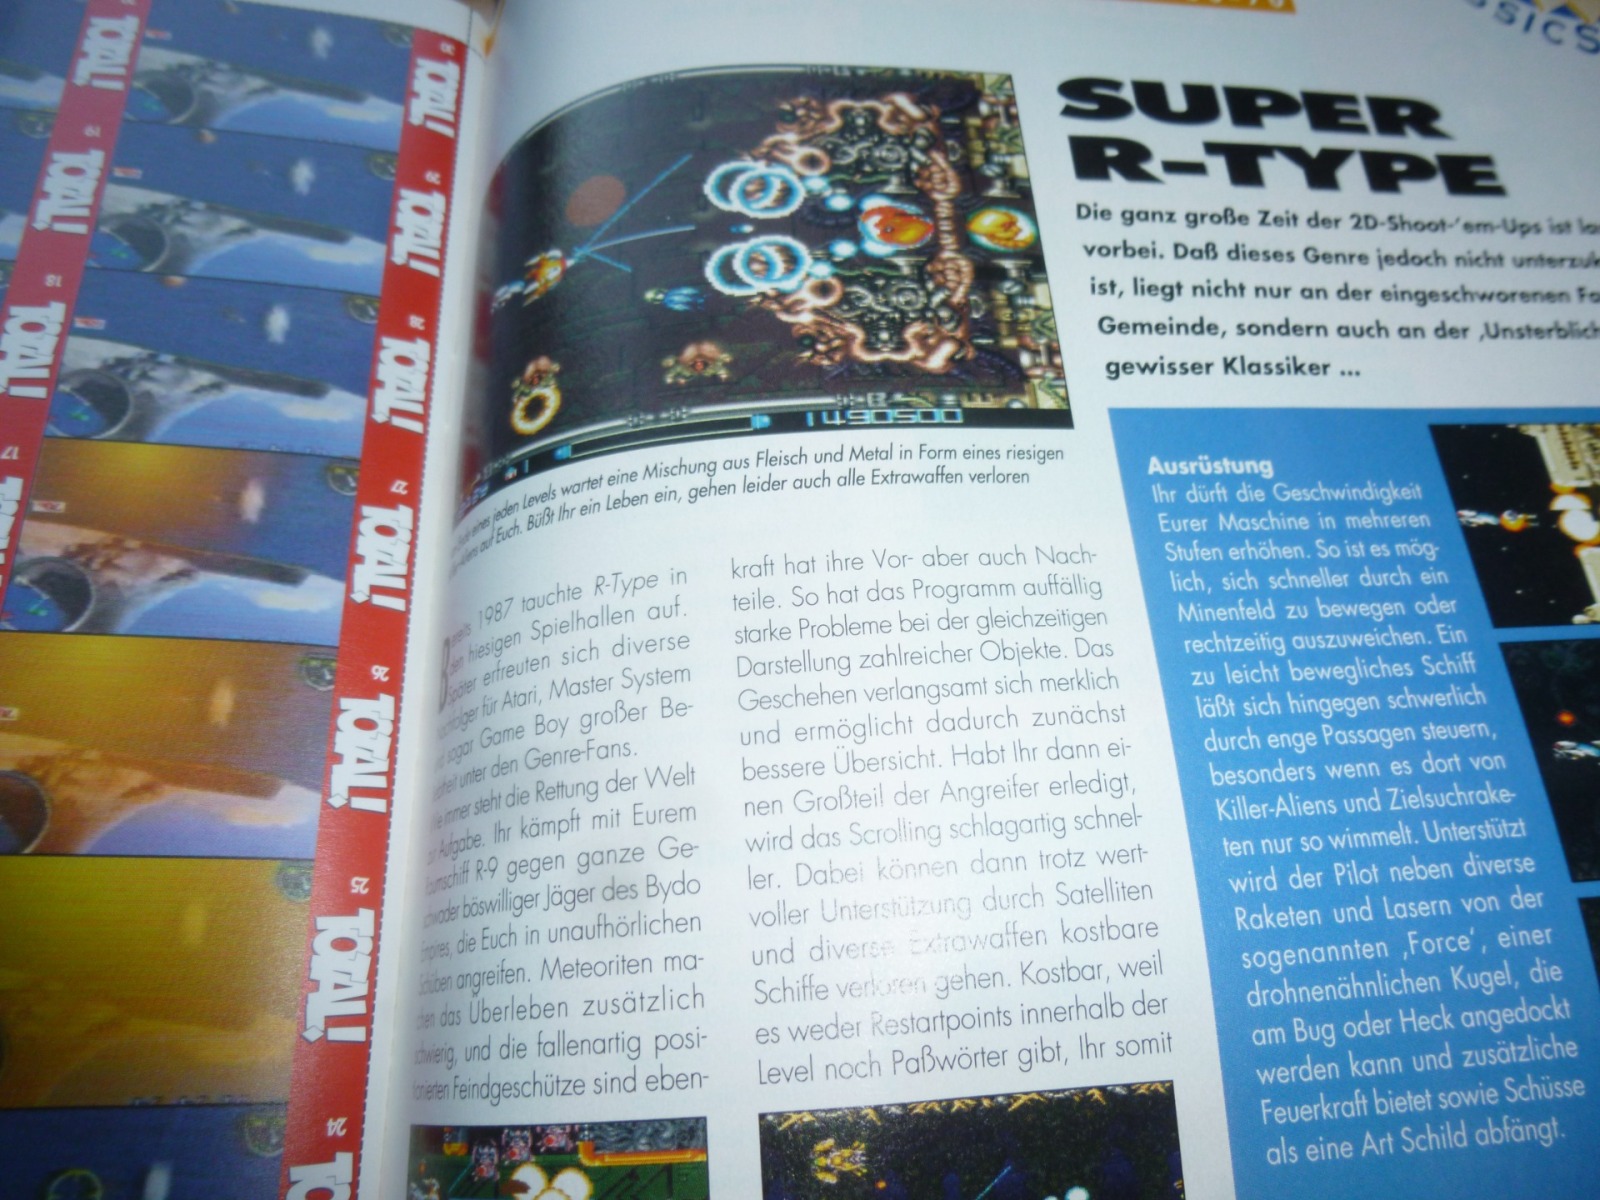 TOTAL Das unabhängige Magazin - 100% Nintendo - Ausgabe 10/96 1996 26